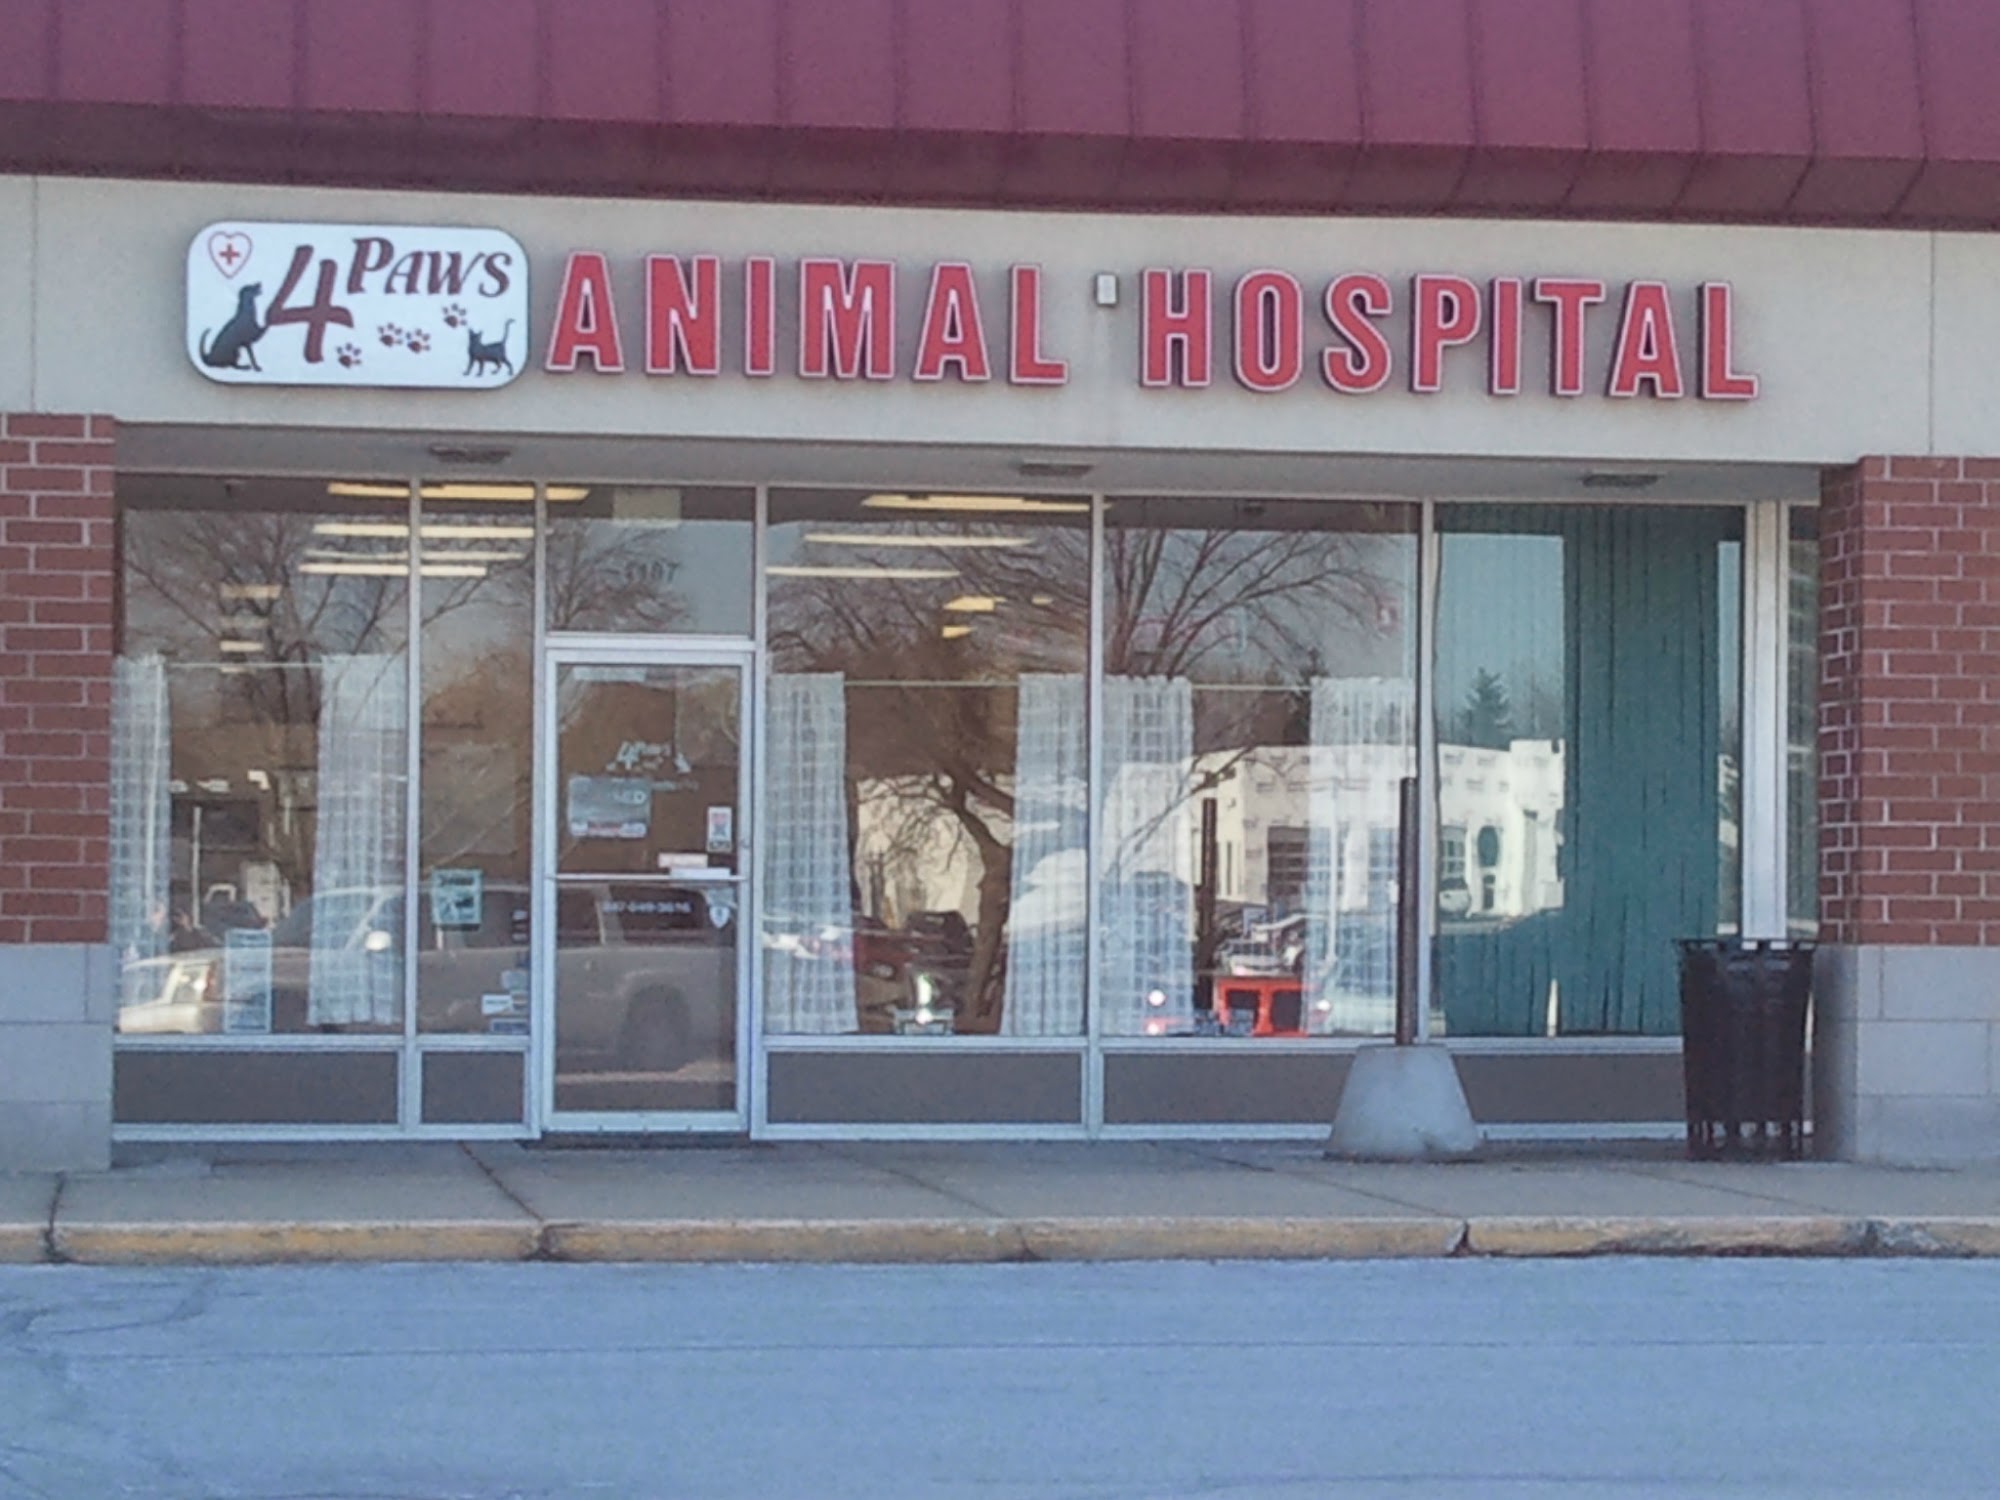 4 Paws Animal Hospital